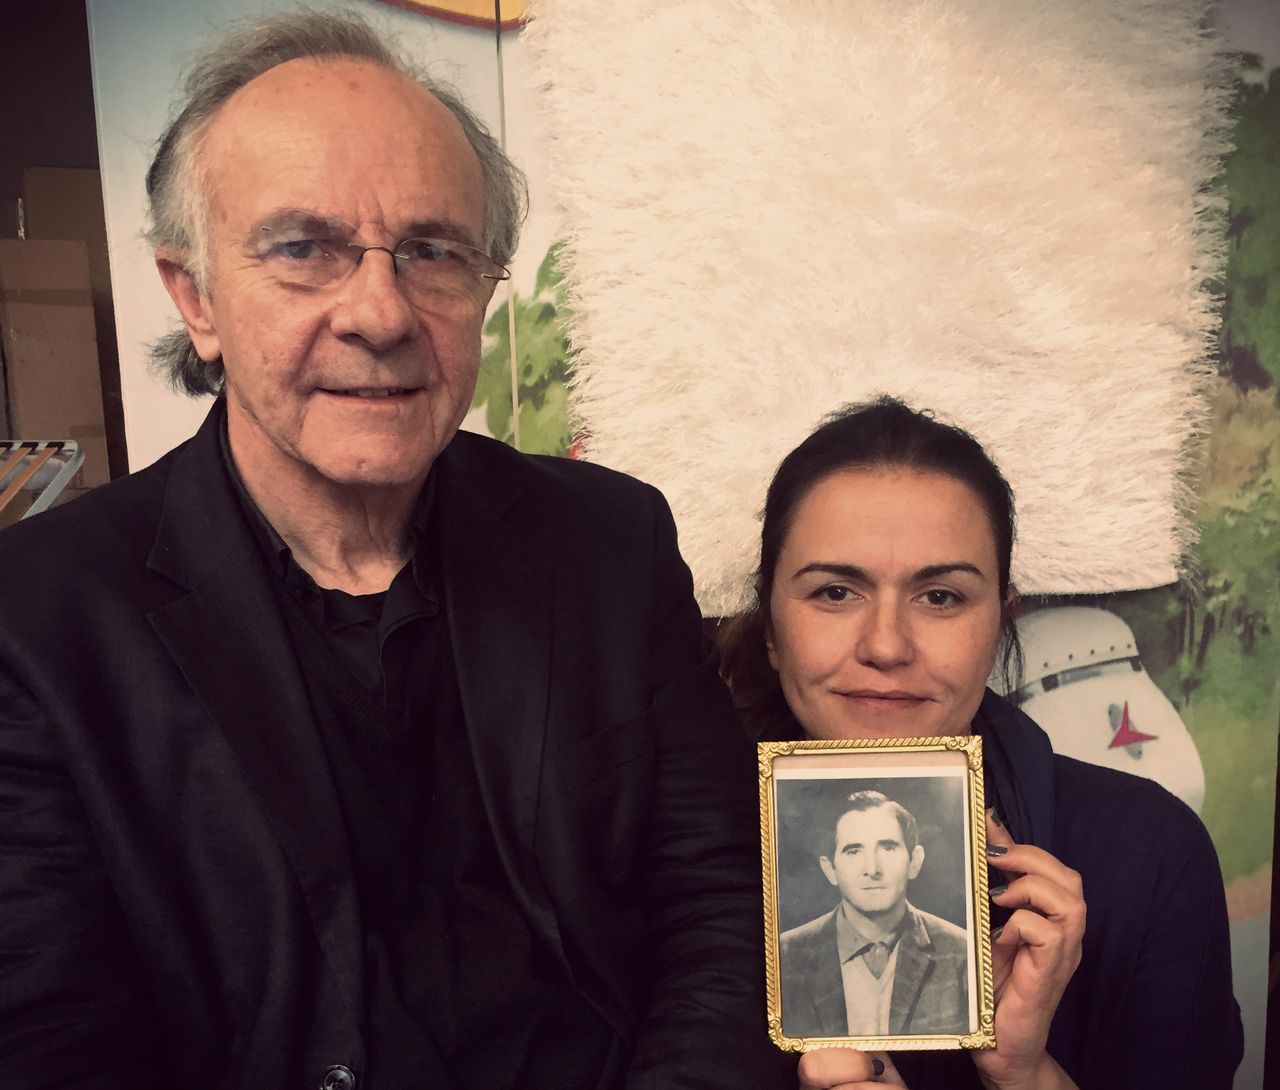 Ο Τζόζεφ με την ανιψιά του, Βάνα Φρυγανιώτη και τη φωτογραφία του θείου του, Ευάγγελου, που όλοι λένε ότι του μοιάζει